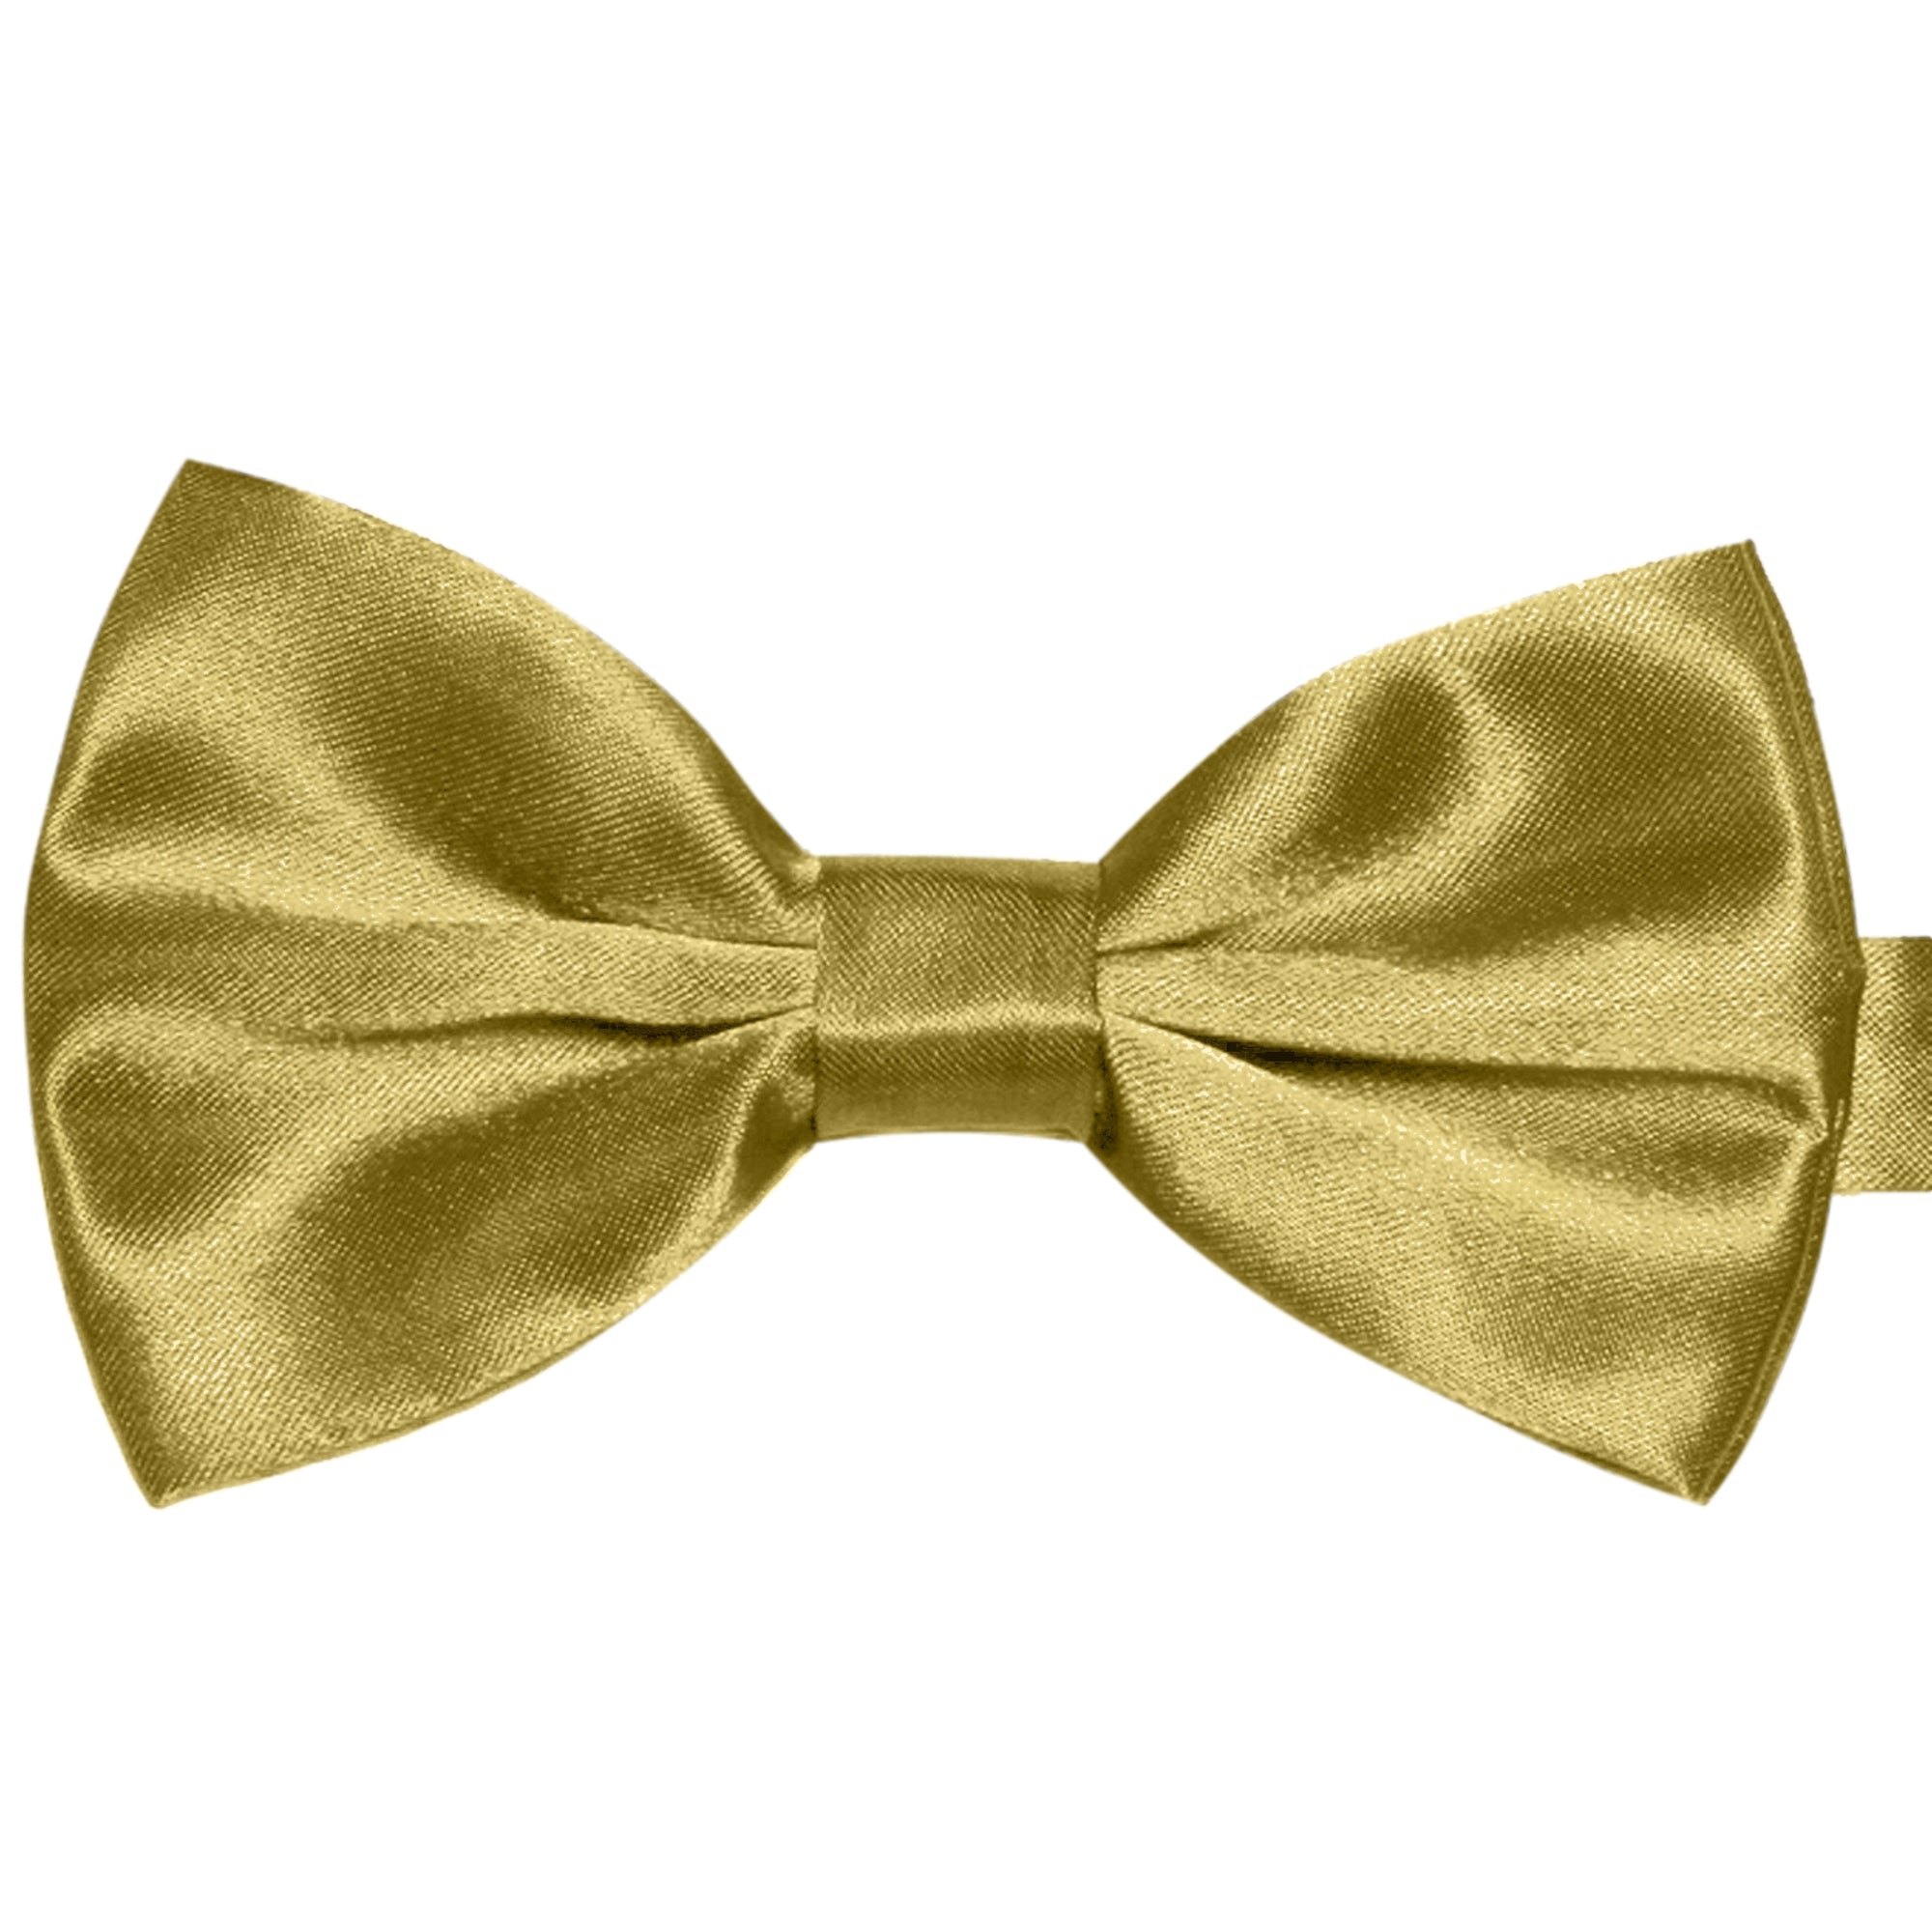 Kaufen Sie Exklusiv Herren-Fliegen Golden Satin Krawatten GASSANI - GASSANI designt für 